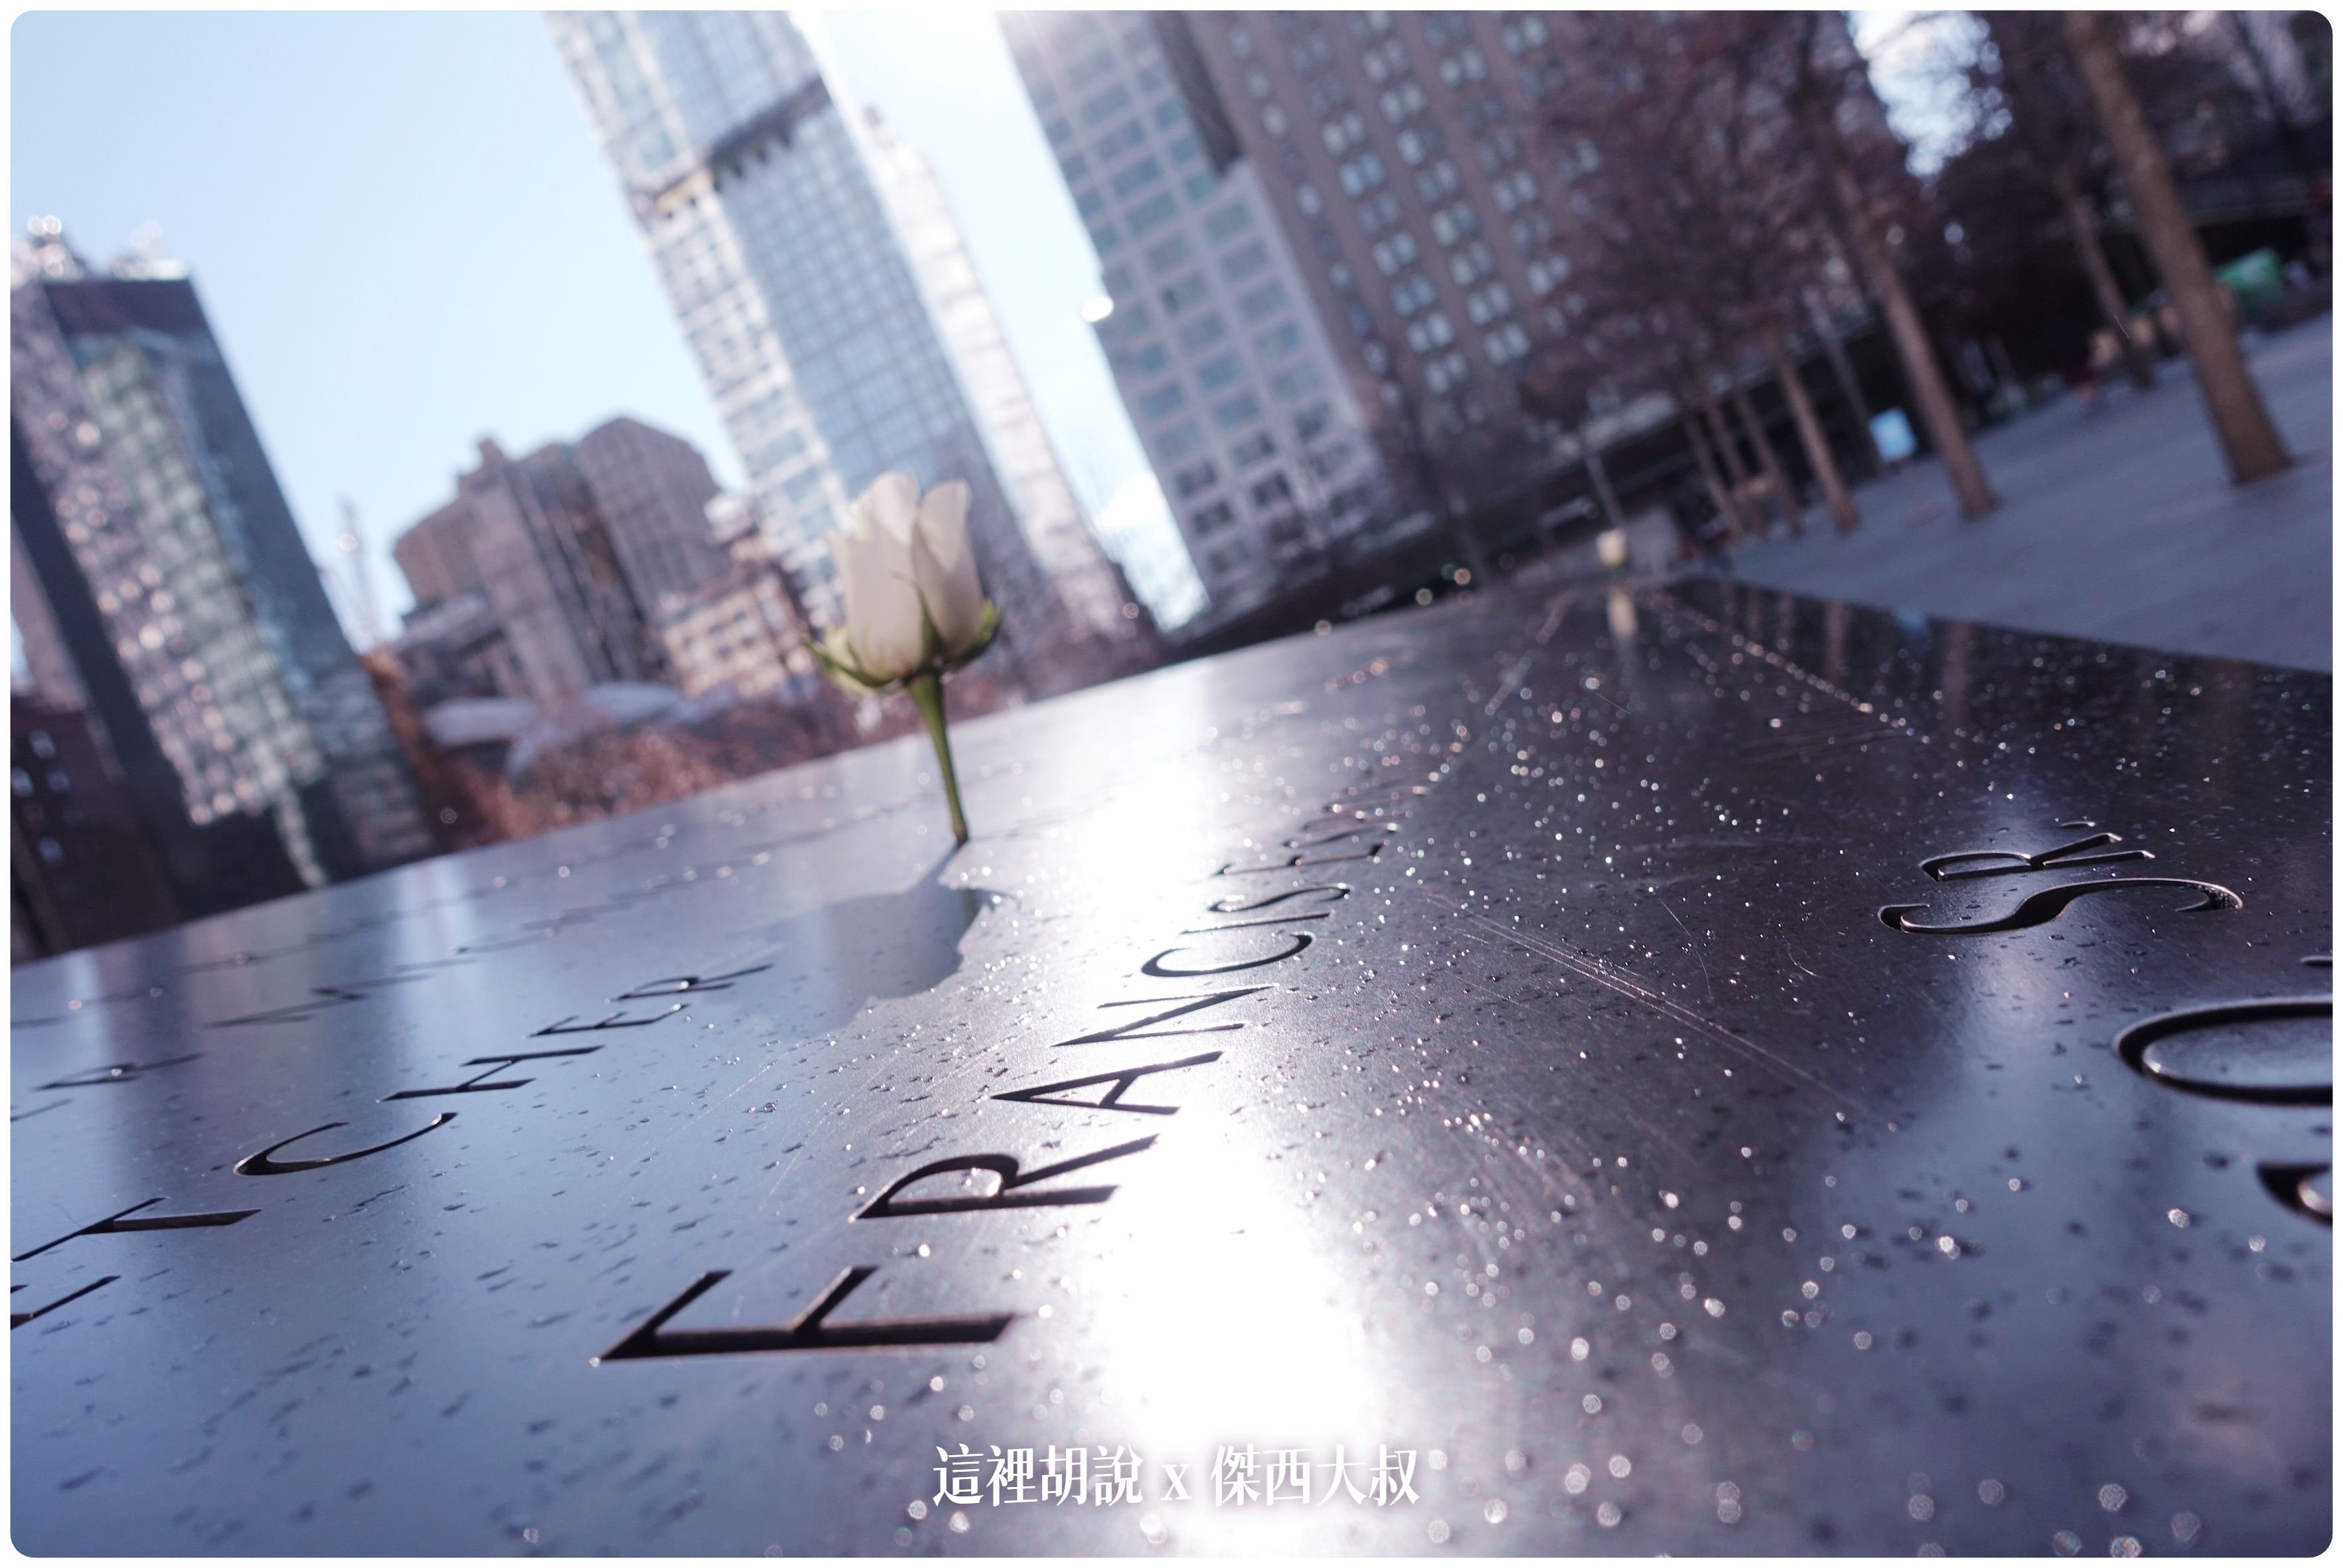 911,911 國家紀念博物館,911博物館,National September 11 Memorial & Museum,NYC,September 11 Memorial & Museum,紐約,紐約必去,紐約景點